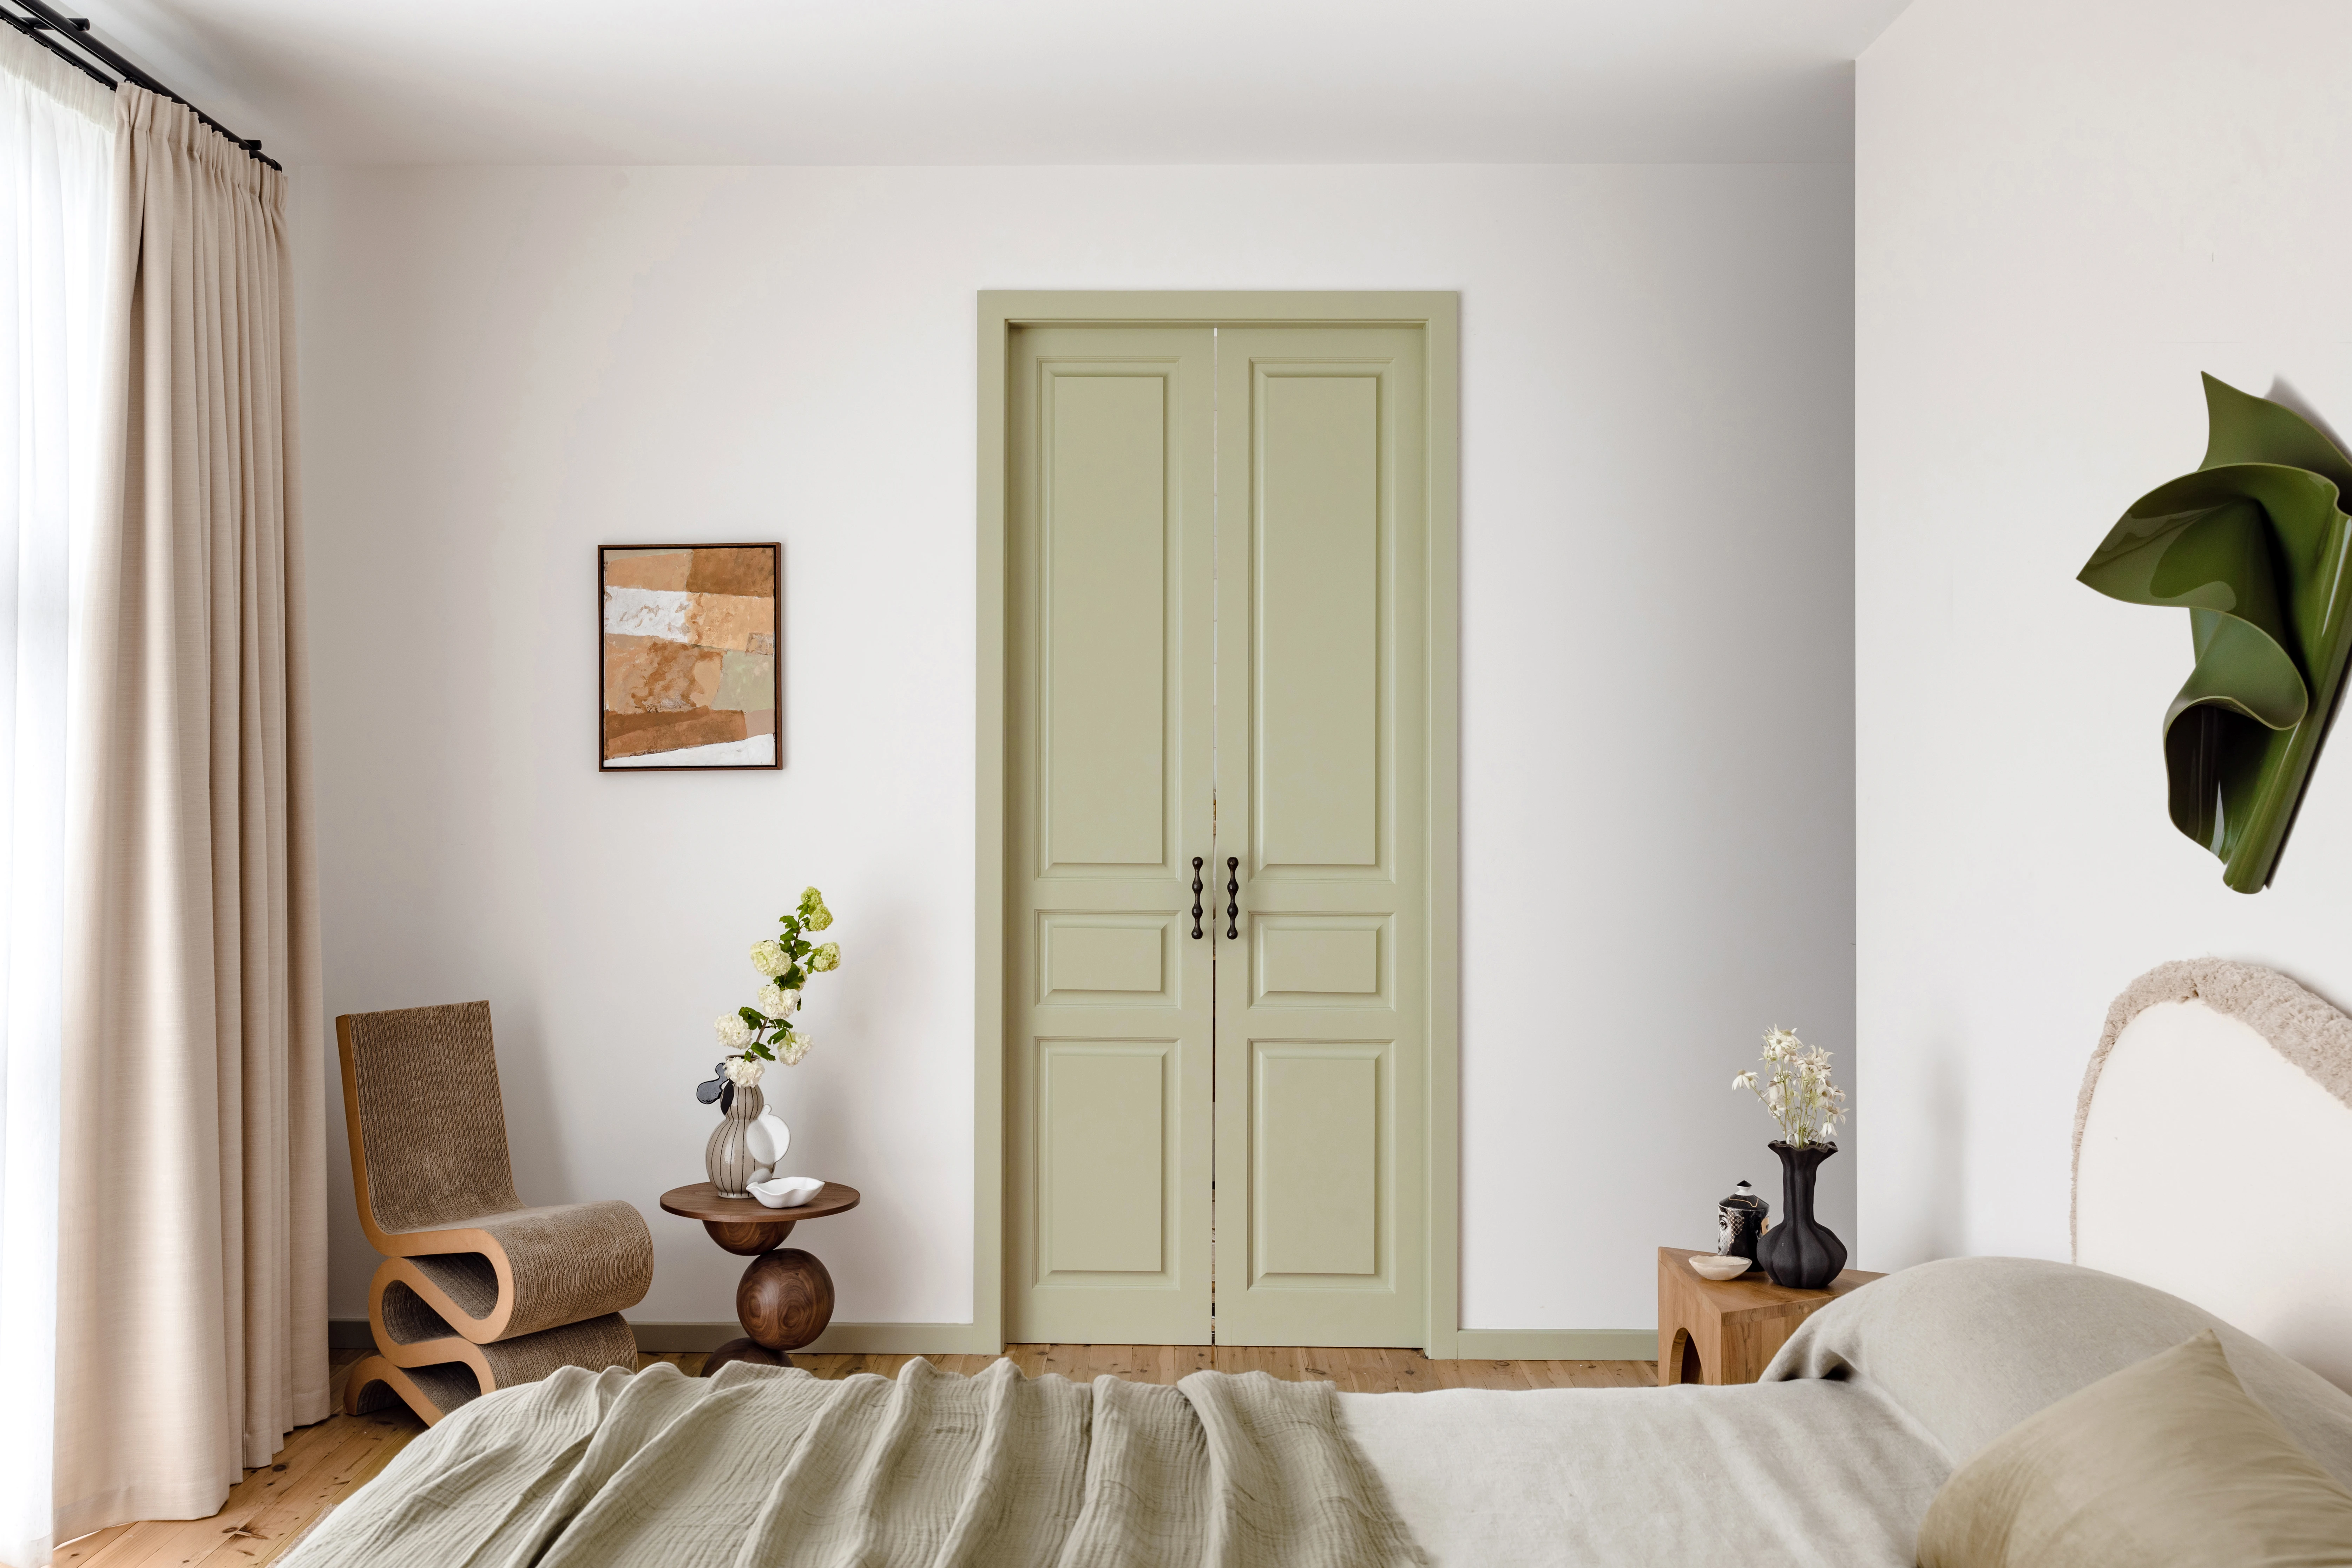 White neutral bedroom with green door